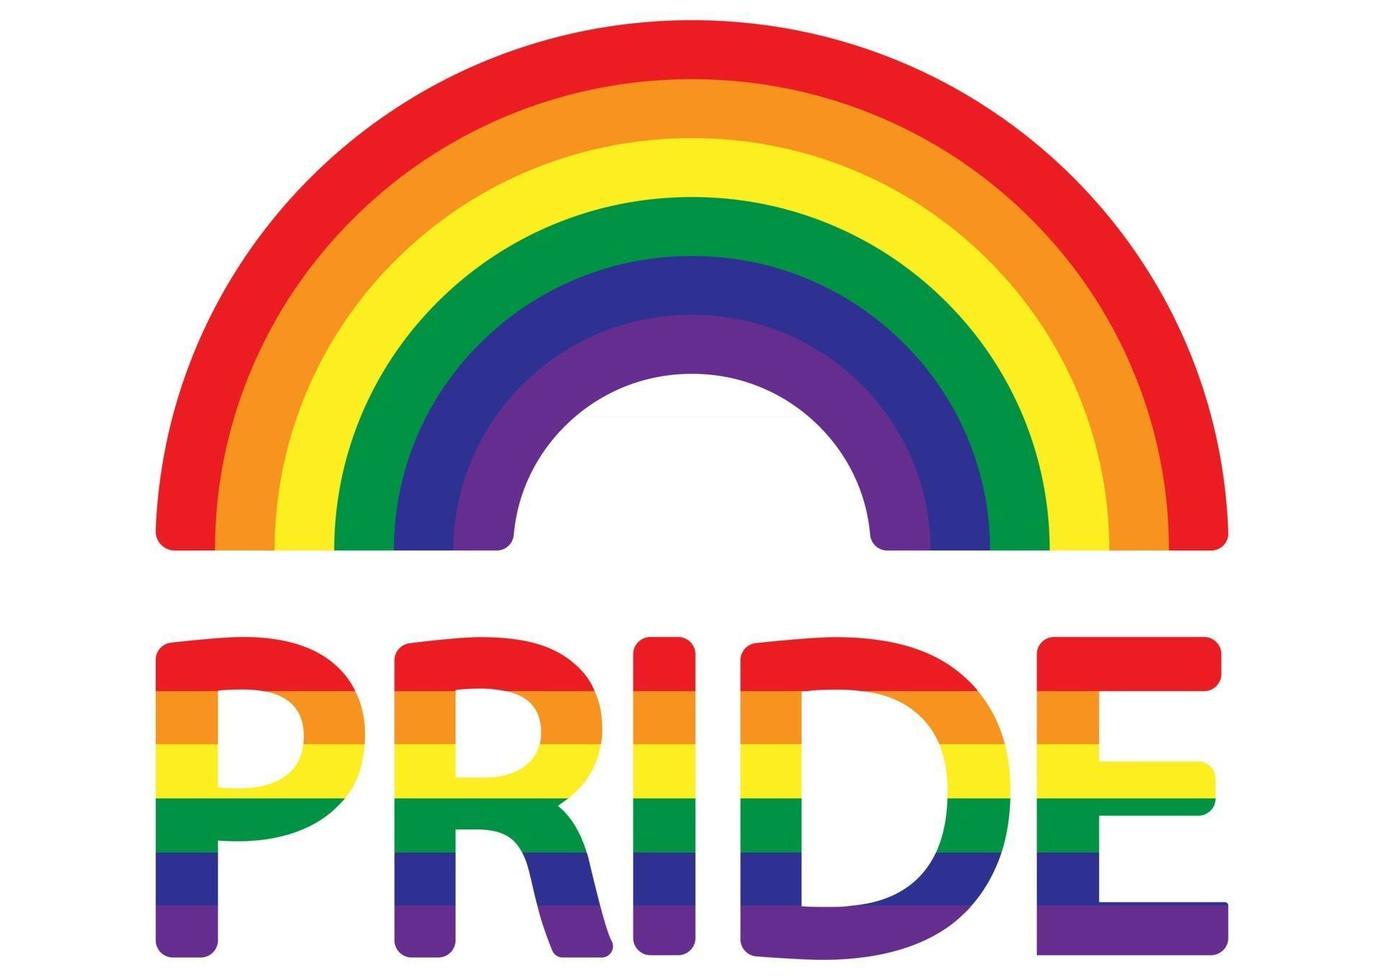 mois de la fierté lgbt. célébré annuellement. arc-en-ciel lgbt. logo abstrait du jour de la fierté. droits de l'homme et tolérance. icône lesbienne, gay, bisexuelle, transgenre. vecteur